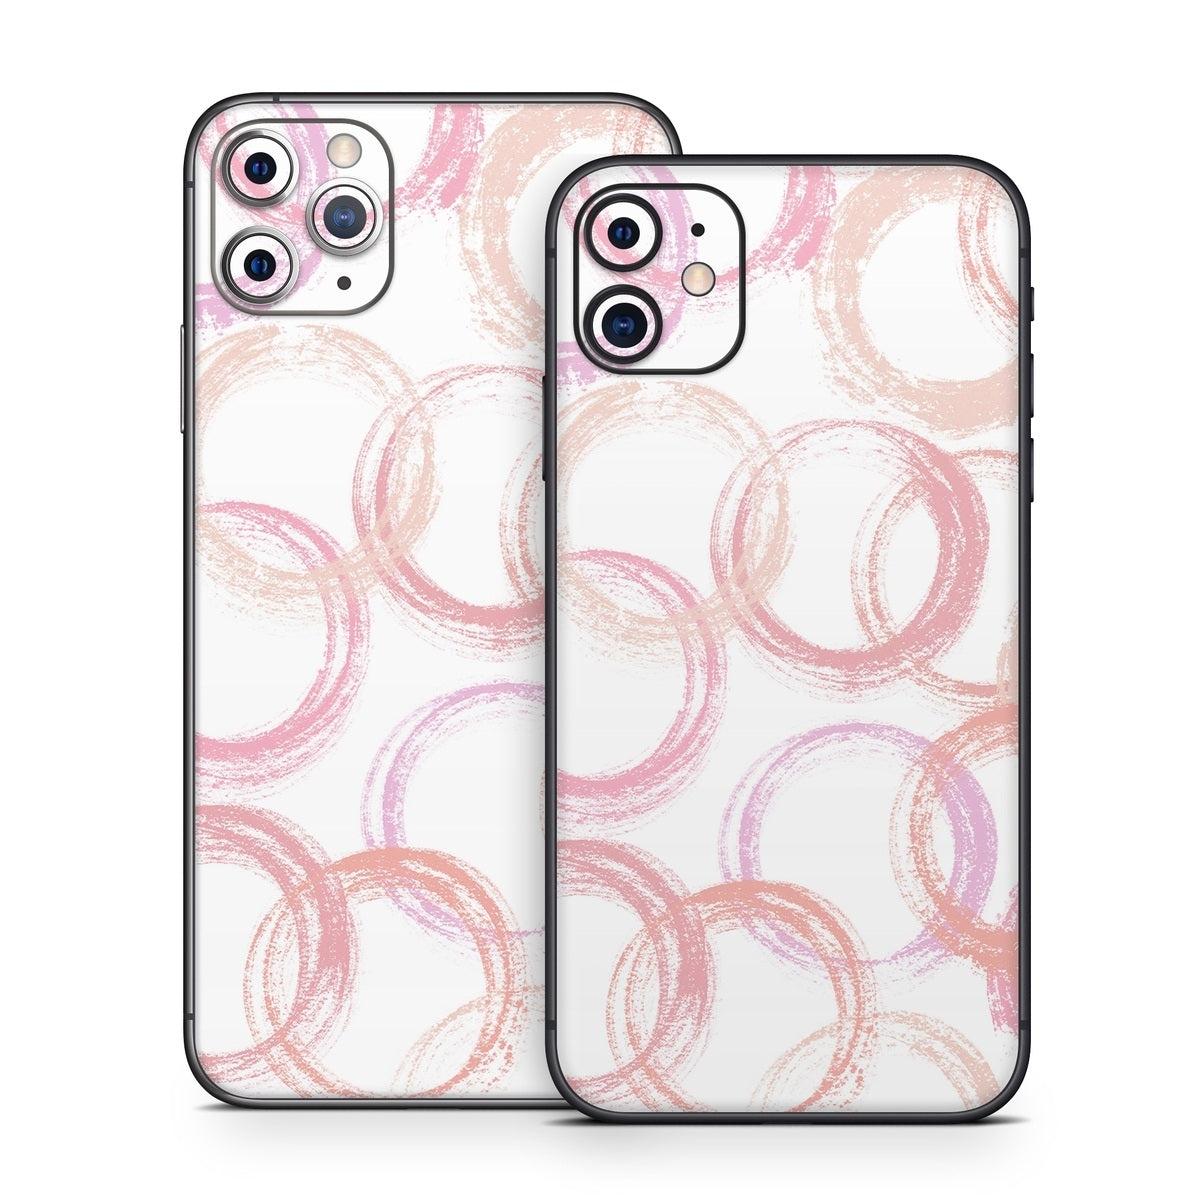 Pink Circles - Apple iPhone 11 Skin